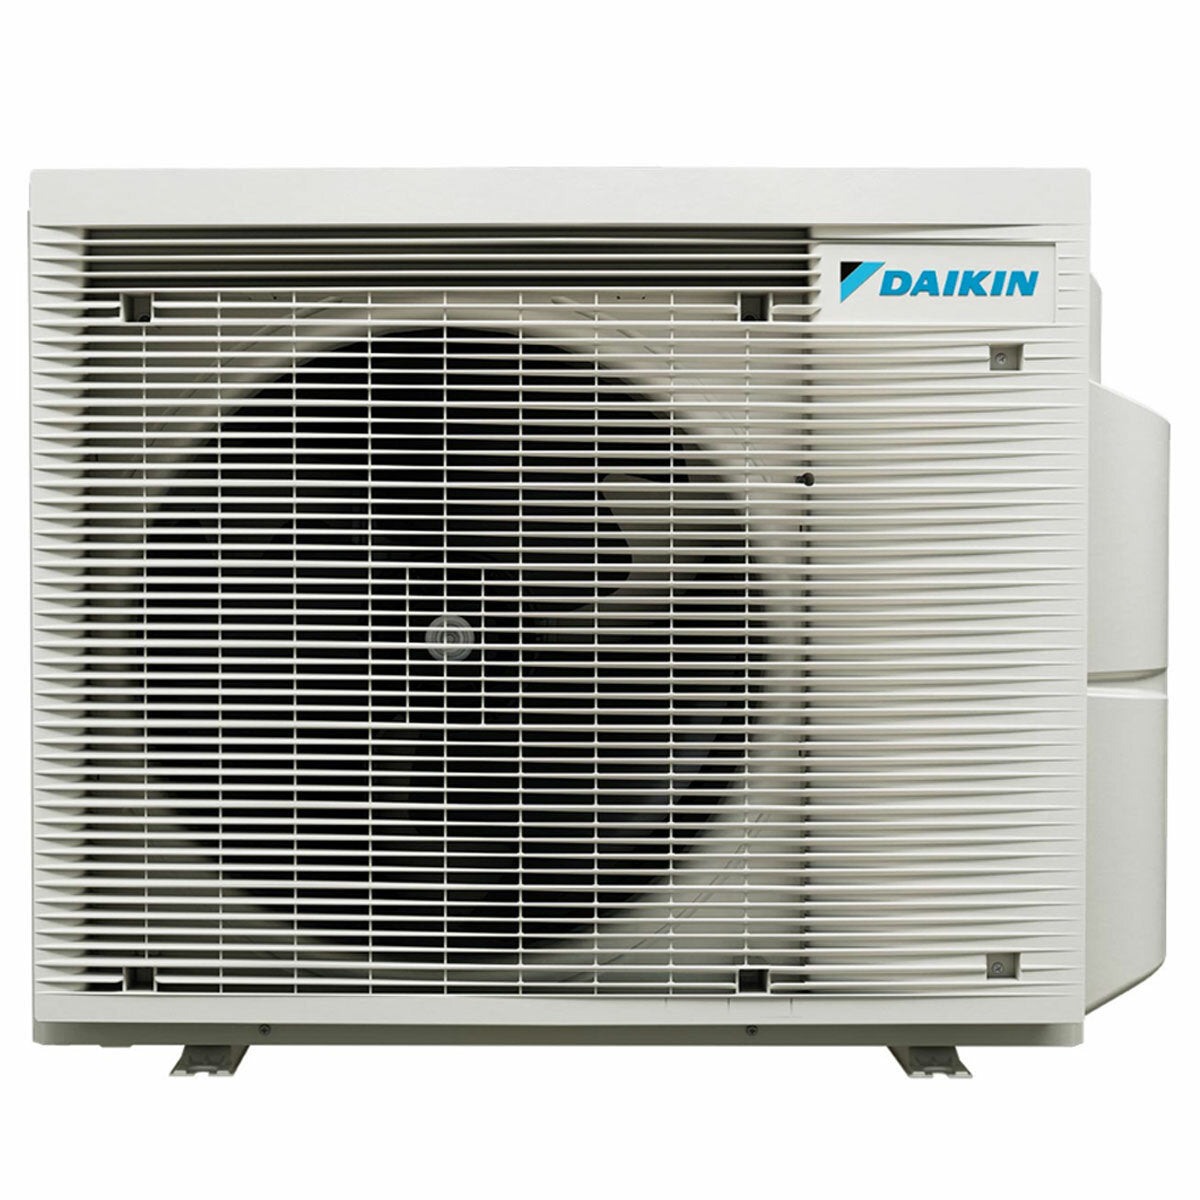 Daikin Stylish White Trial Split-Klimaanlage 7000+7000+18000 BTU Inverter A++ WLAN-Außeneinheit 6,8 kW